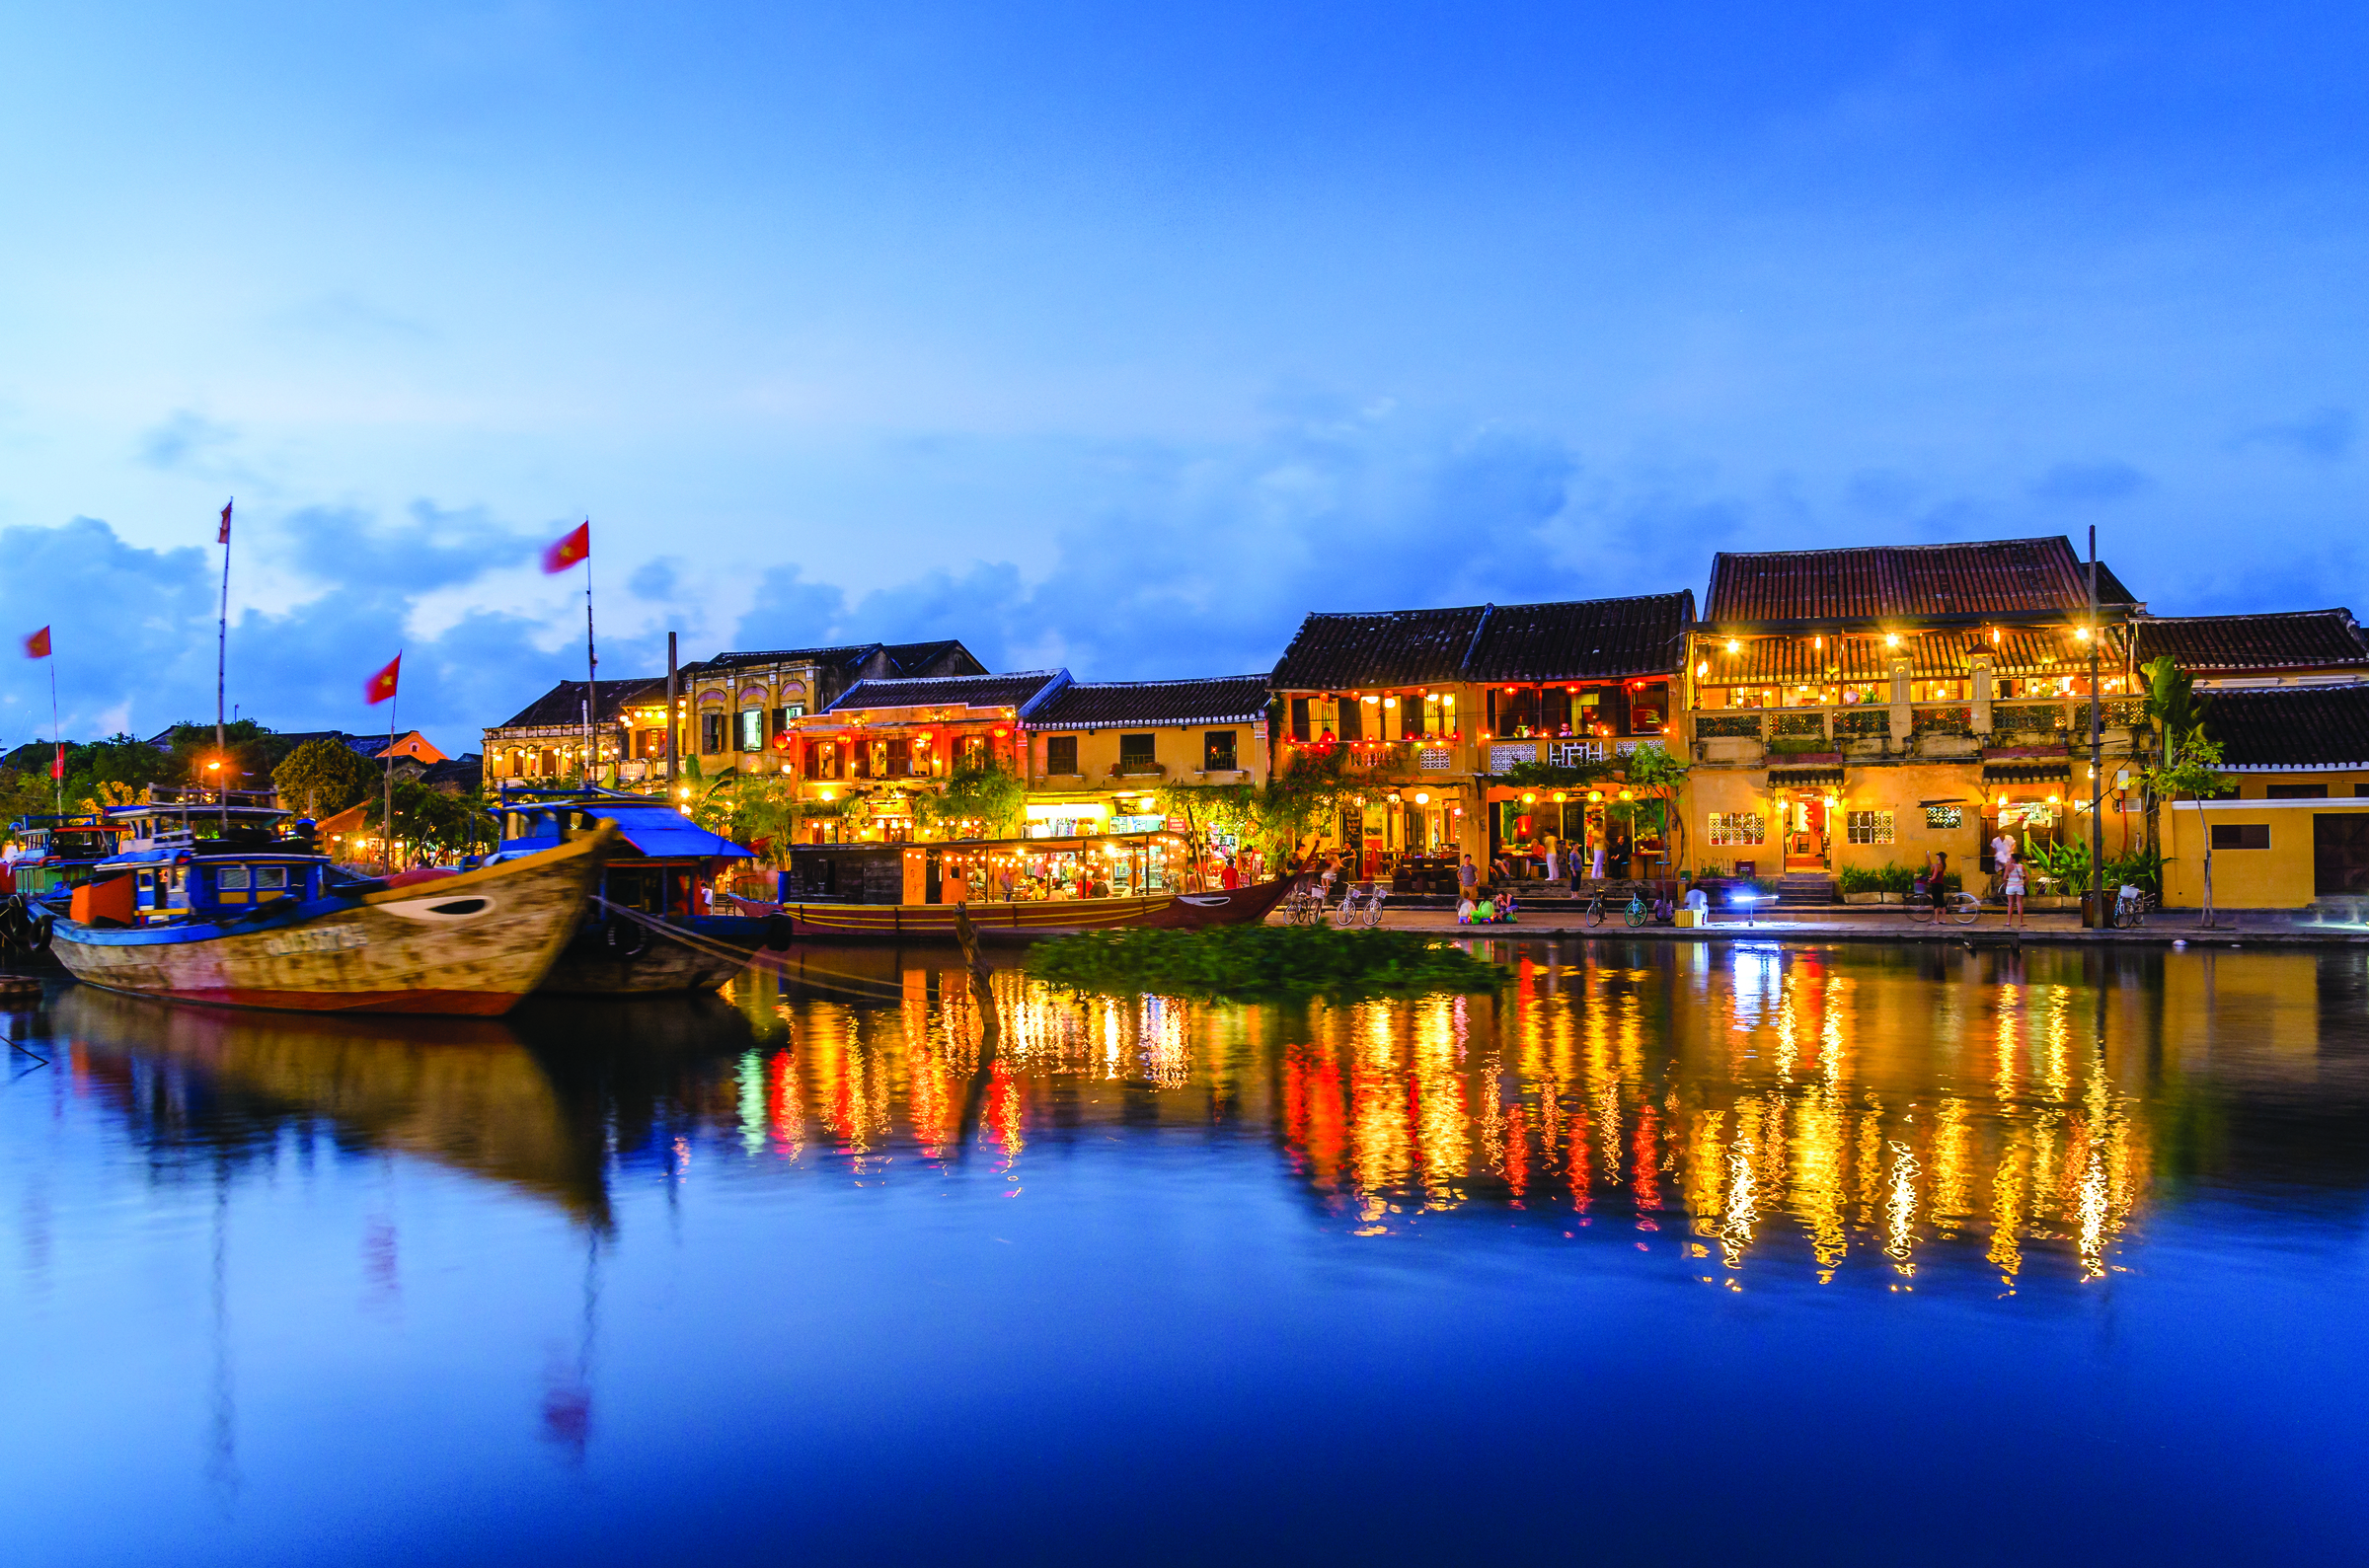 Hoi An Riverside twilight, Vietnam